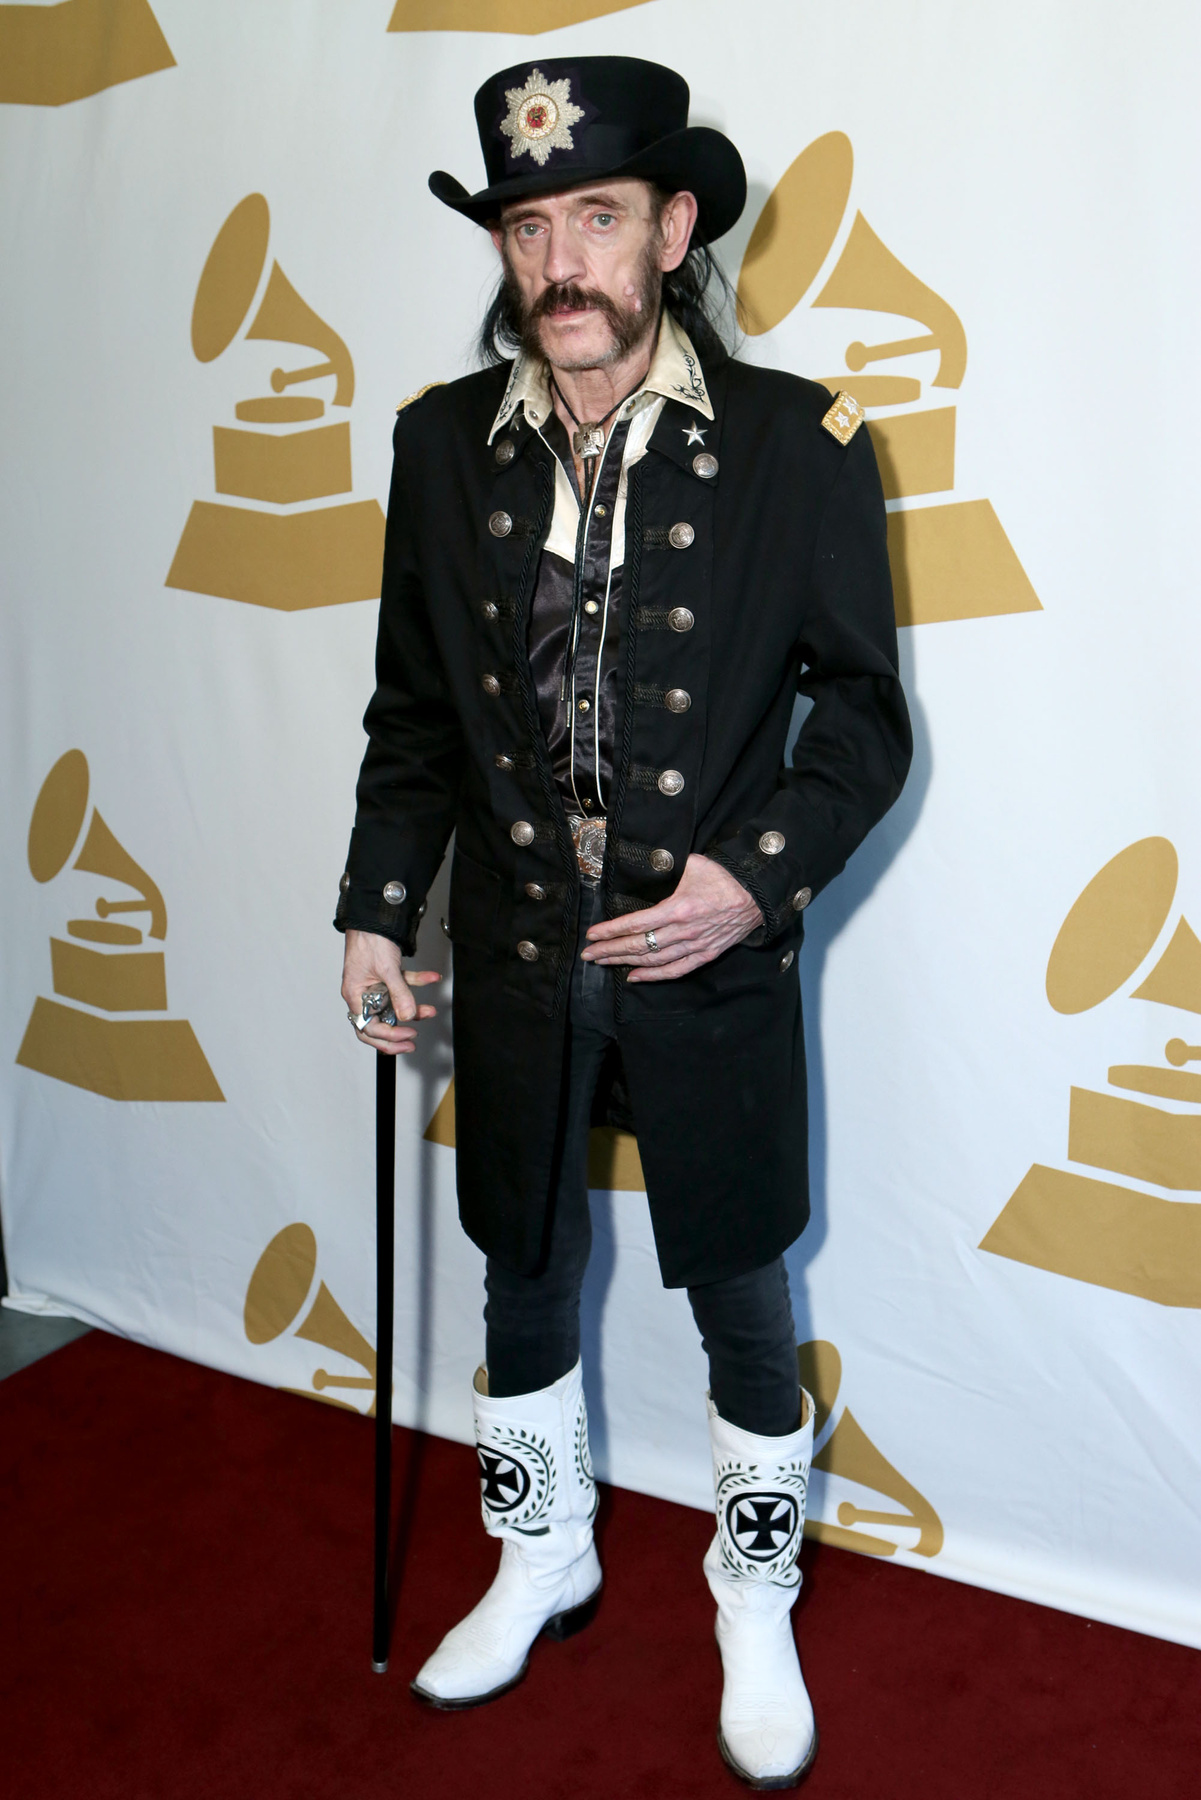 Lemmy Kilmister nagy rajongója a minőségi, feltűnő csizmáknak.